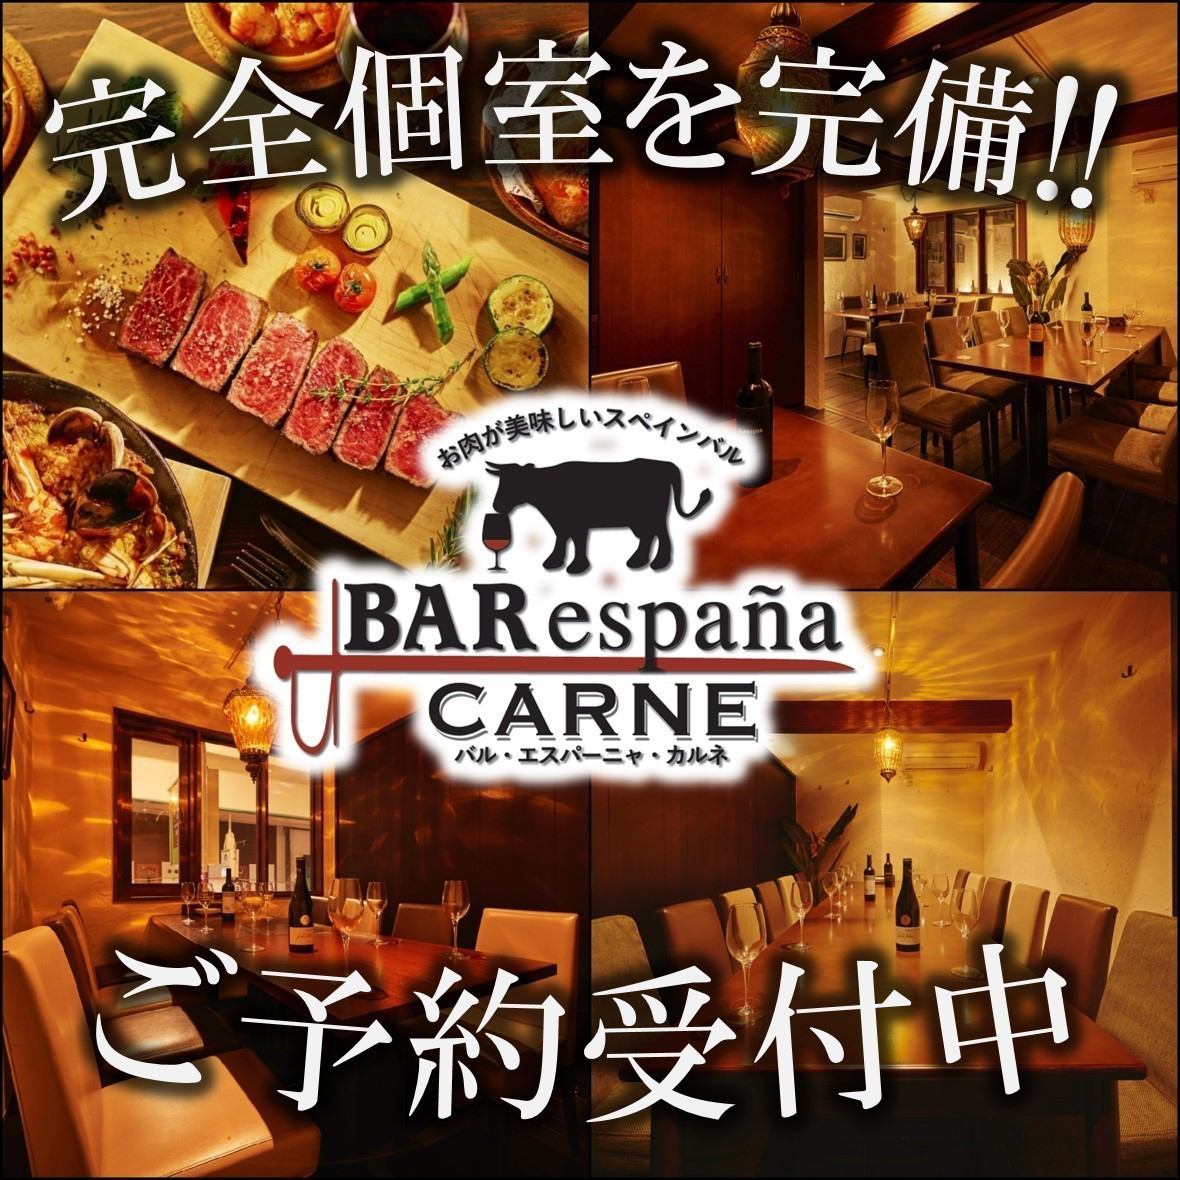 享用【日本第一海鮮飯】和【正宗炭烤牛排】♪ 擁有私人房間空間的正宗西班牙酒吧